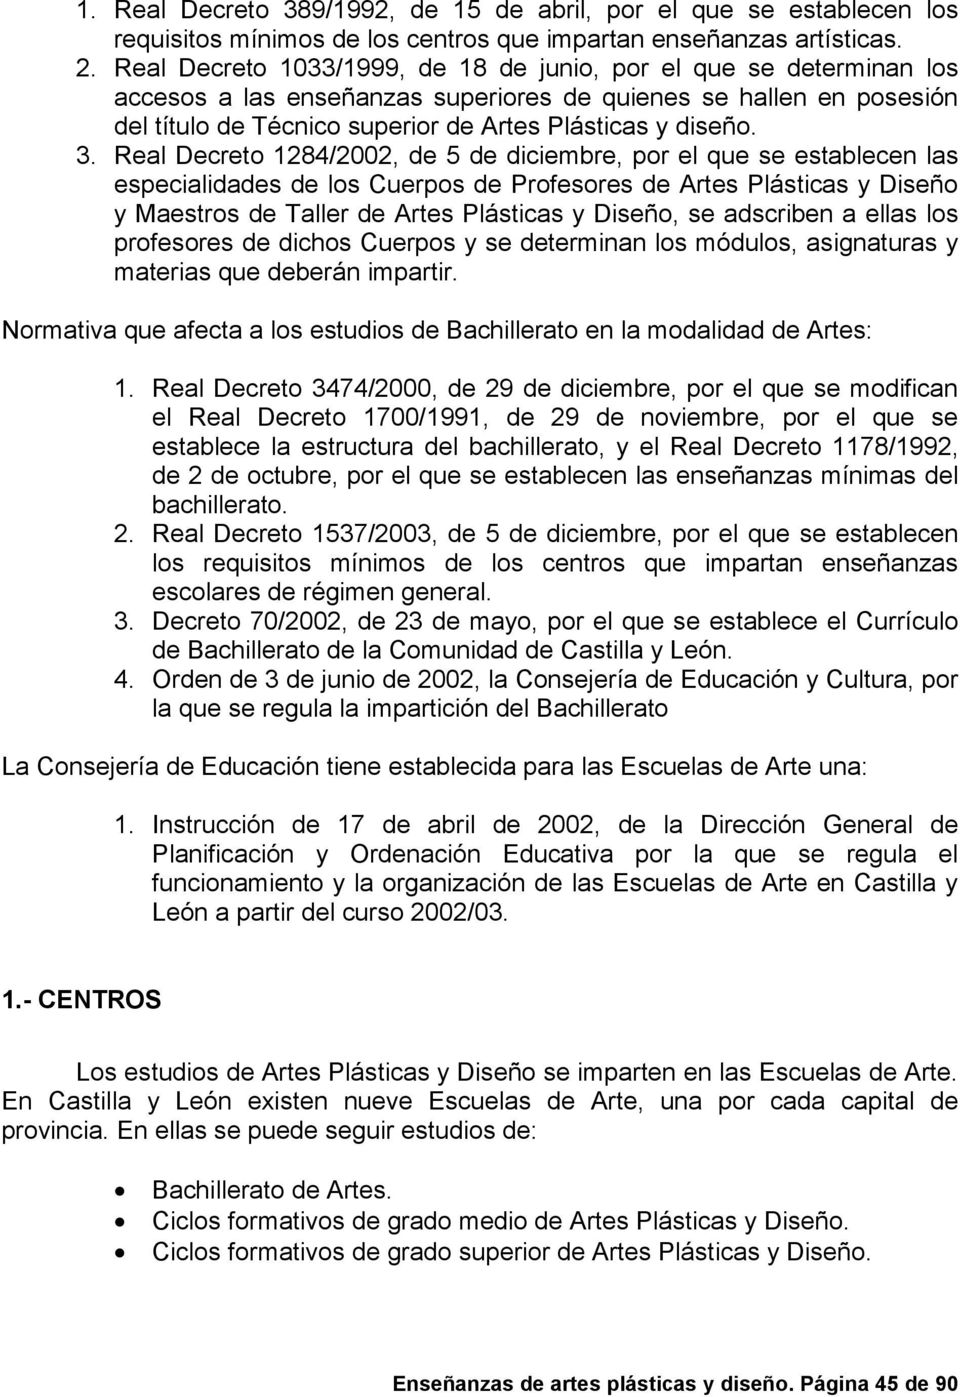 Real Decreto 1284/2002, de 5 de diciembre, por el que se establecen las especialidades de los Cuerpos de Profesores de Artes Plásticas y Diseño y Maestros de Taller de Artes Plásticas y Diseño, se